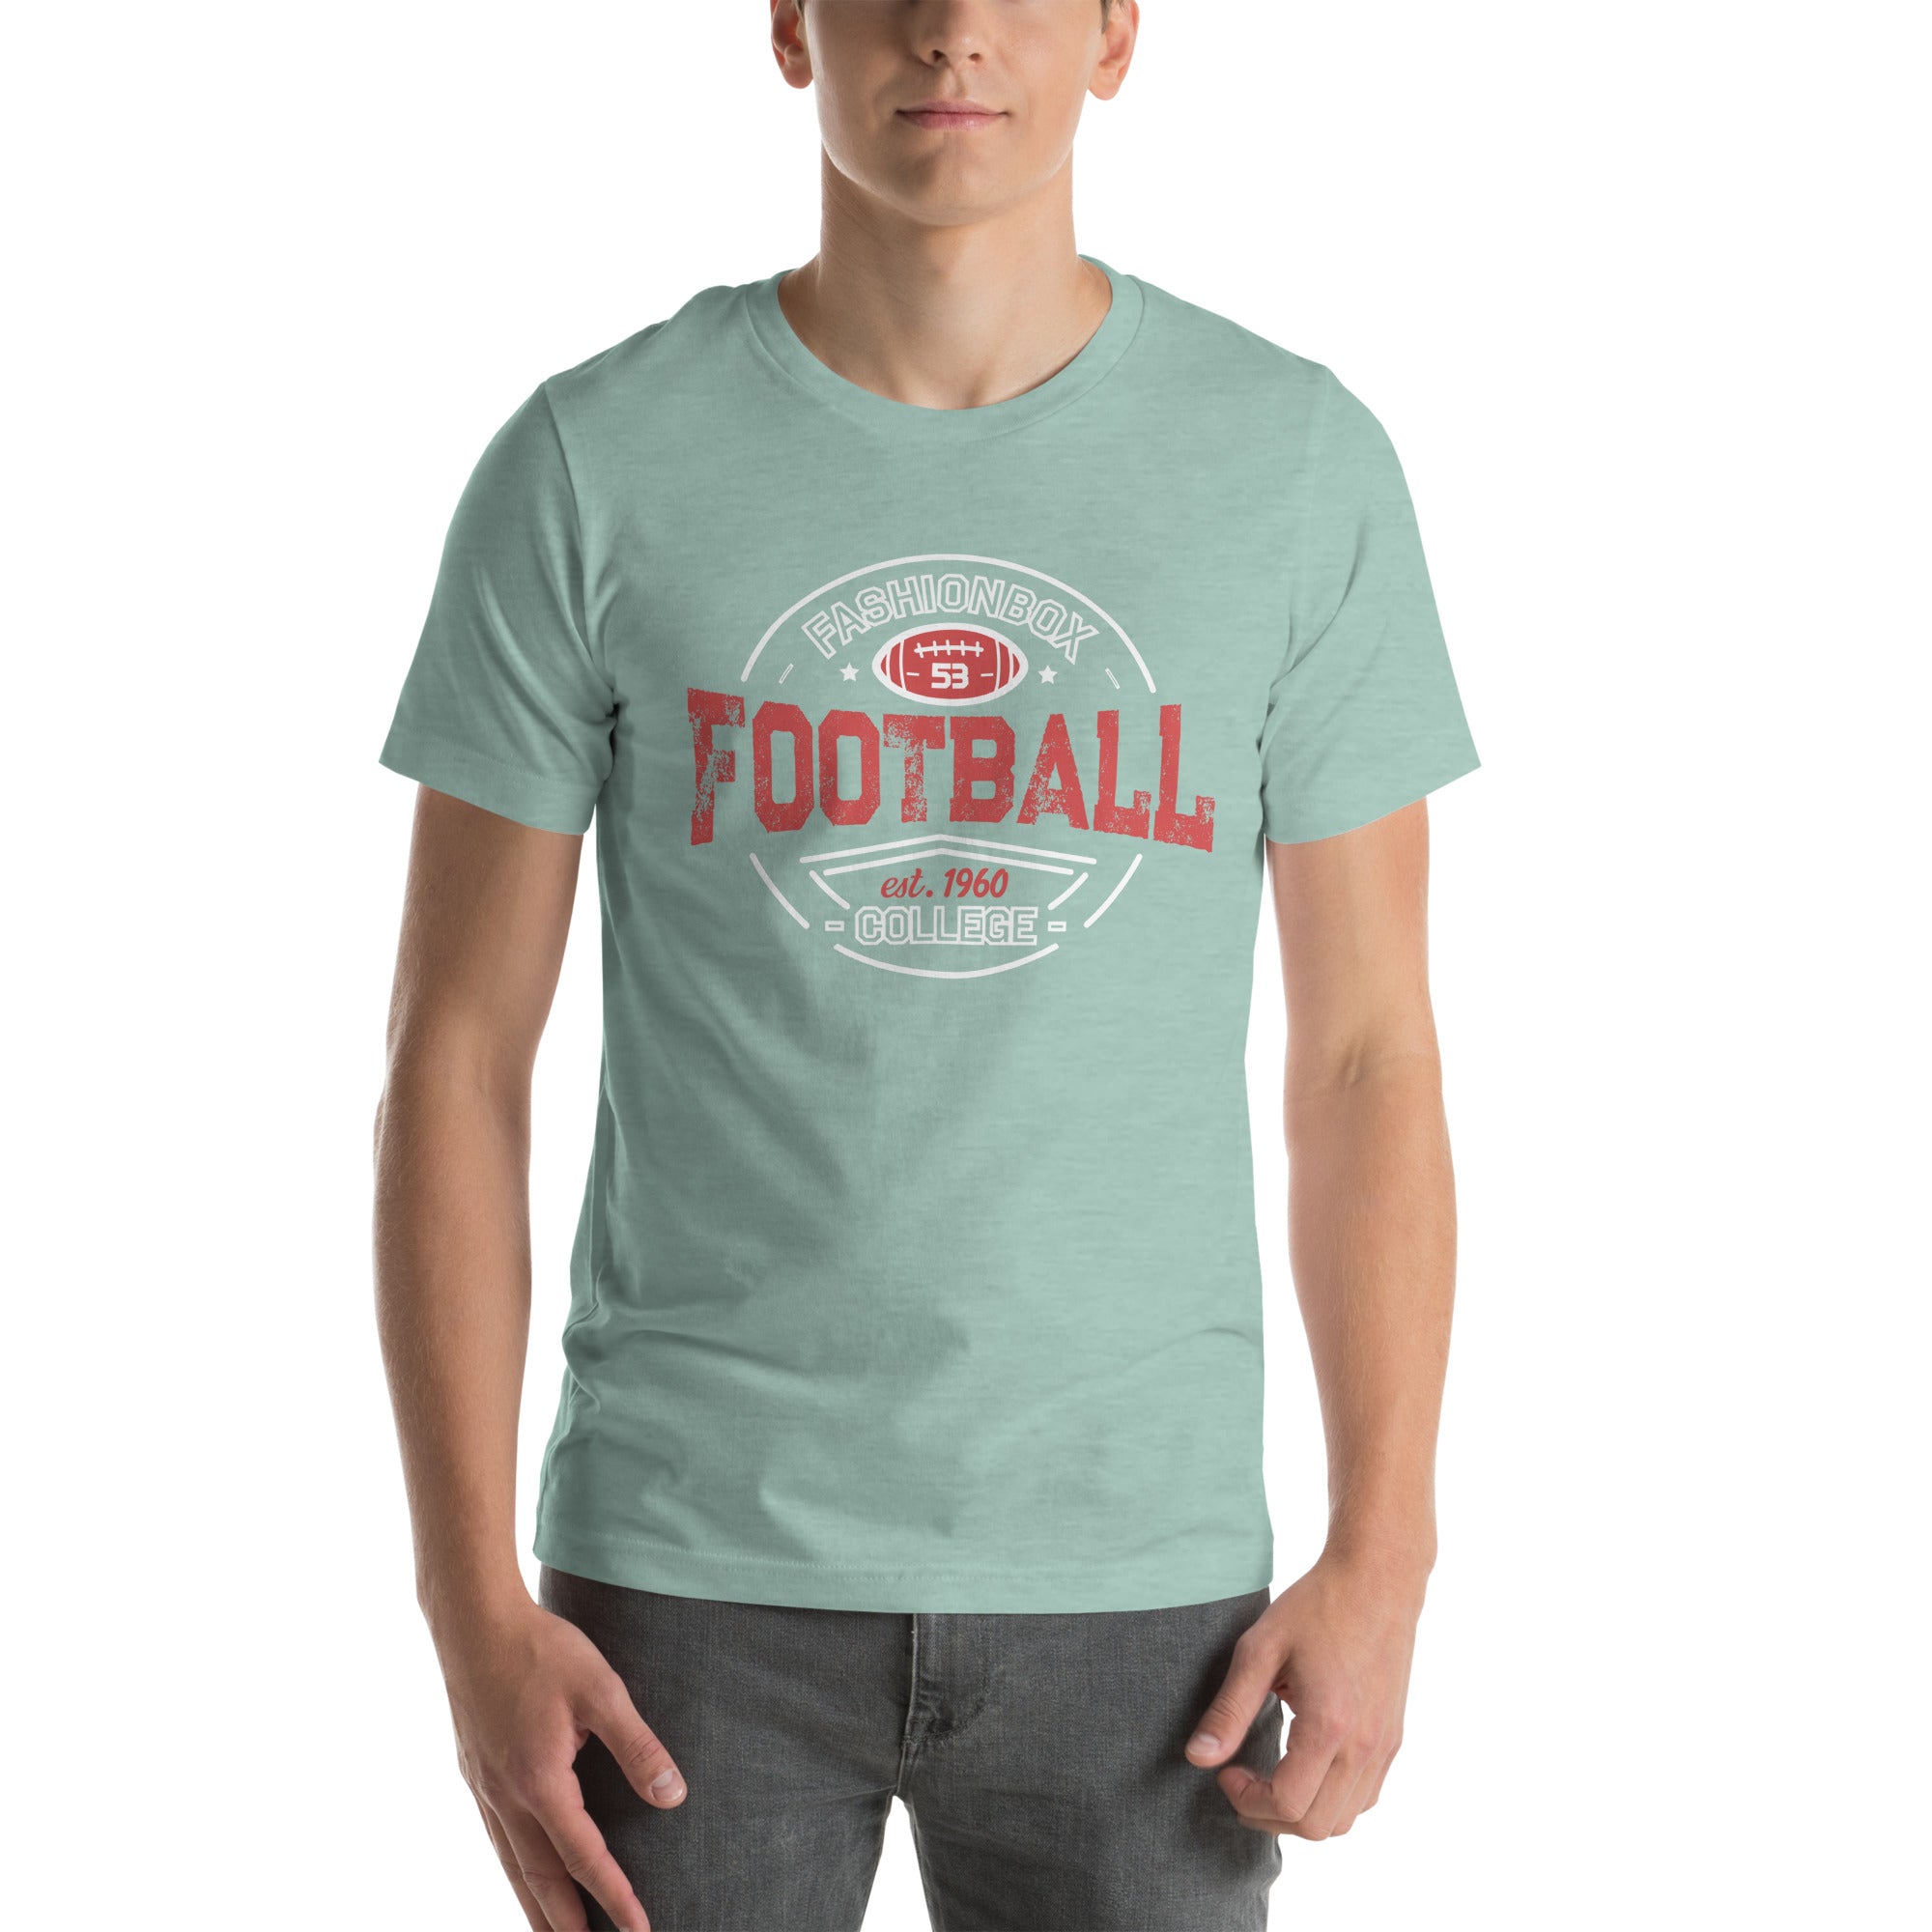 Football FB t-shirt - FashionBox